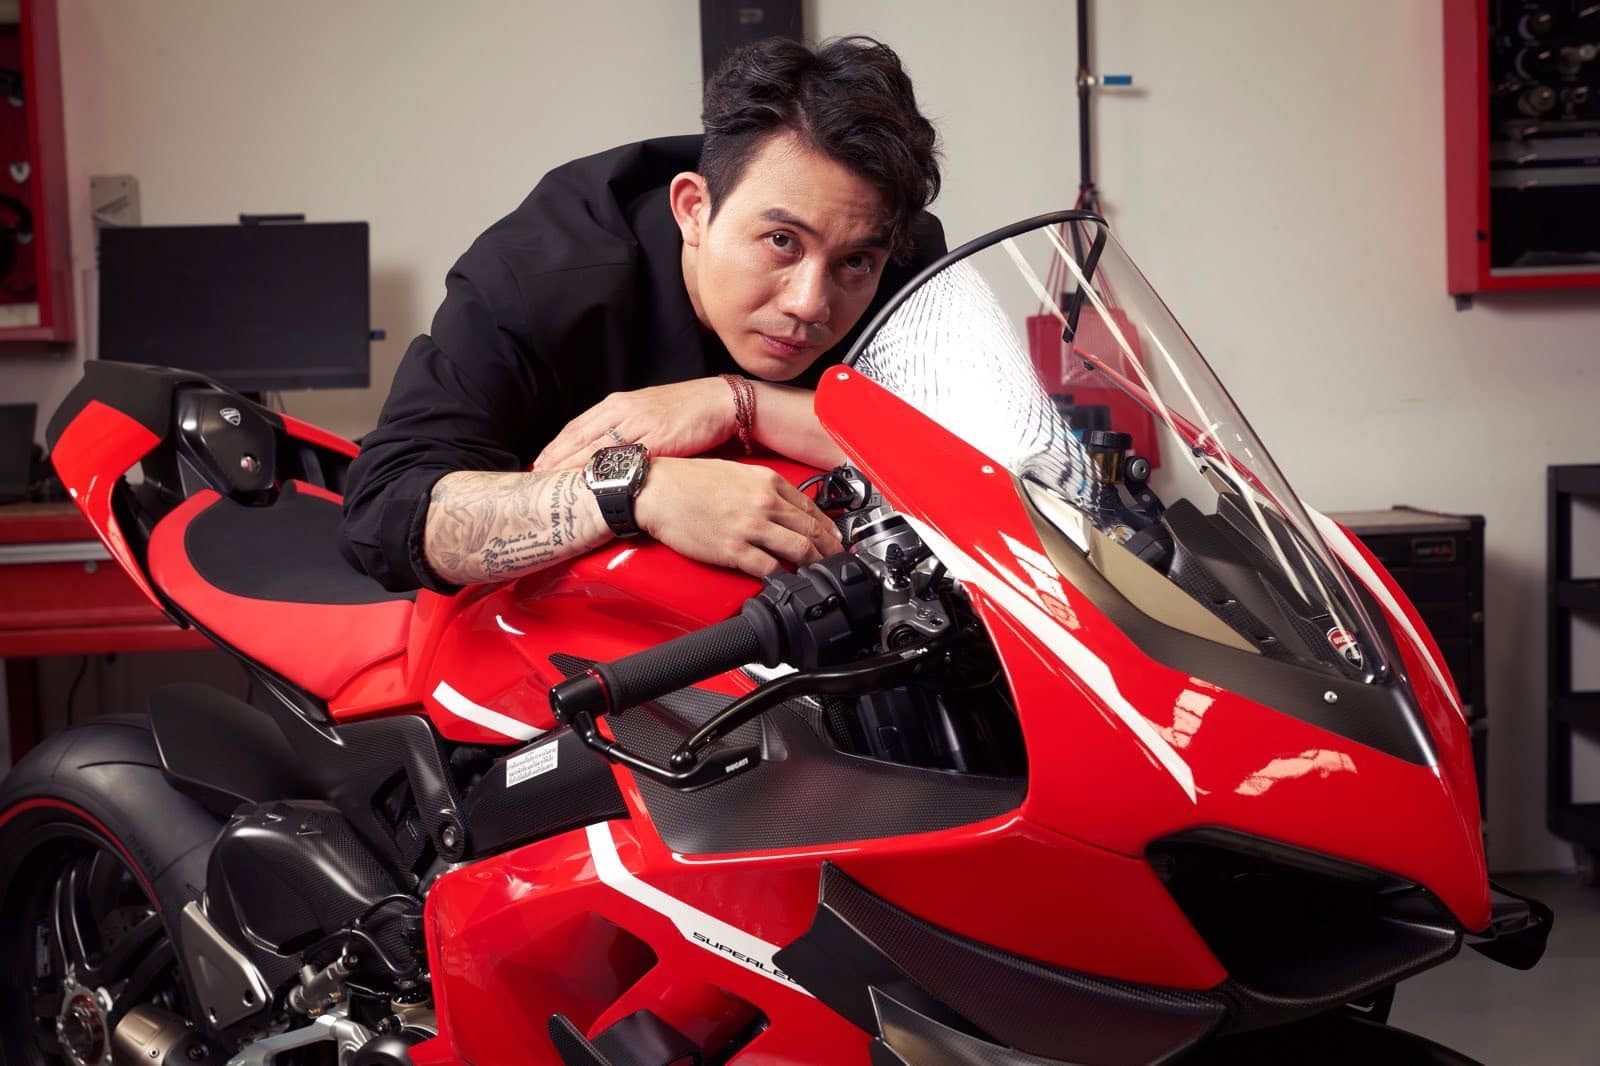 Giá xe siêu mô tô Ducati: Xe siêu mô tô Ducati là sự kết hợp hoàn hảo giữa thiết kế đẳng cấp và sức mạnh đáng kinh ngạc. Hãy chiêm ngưỡng những hình ảnh đẹp và cập nhật về giá xe tại địa chỉ của chúng tôi, để tìm hiểu rõ hơn về đẳng cấp của siêu mô tô này.